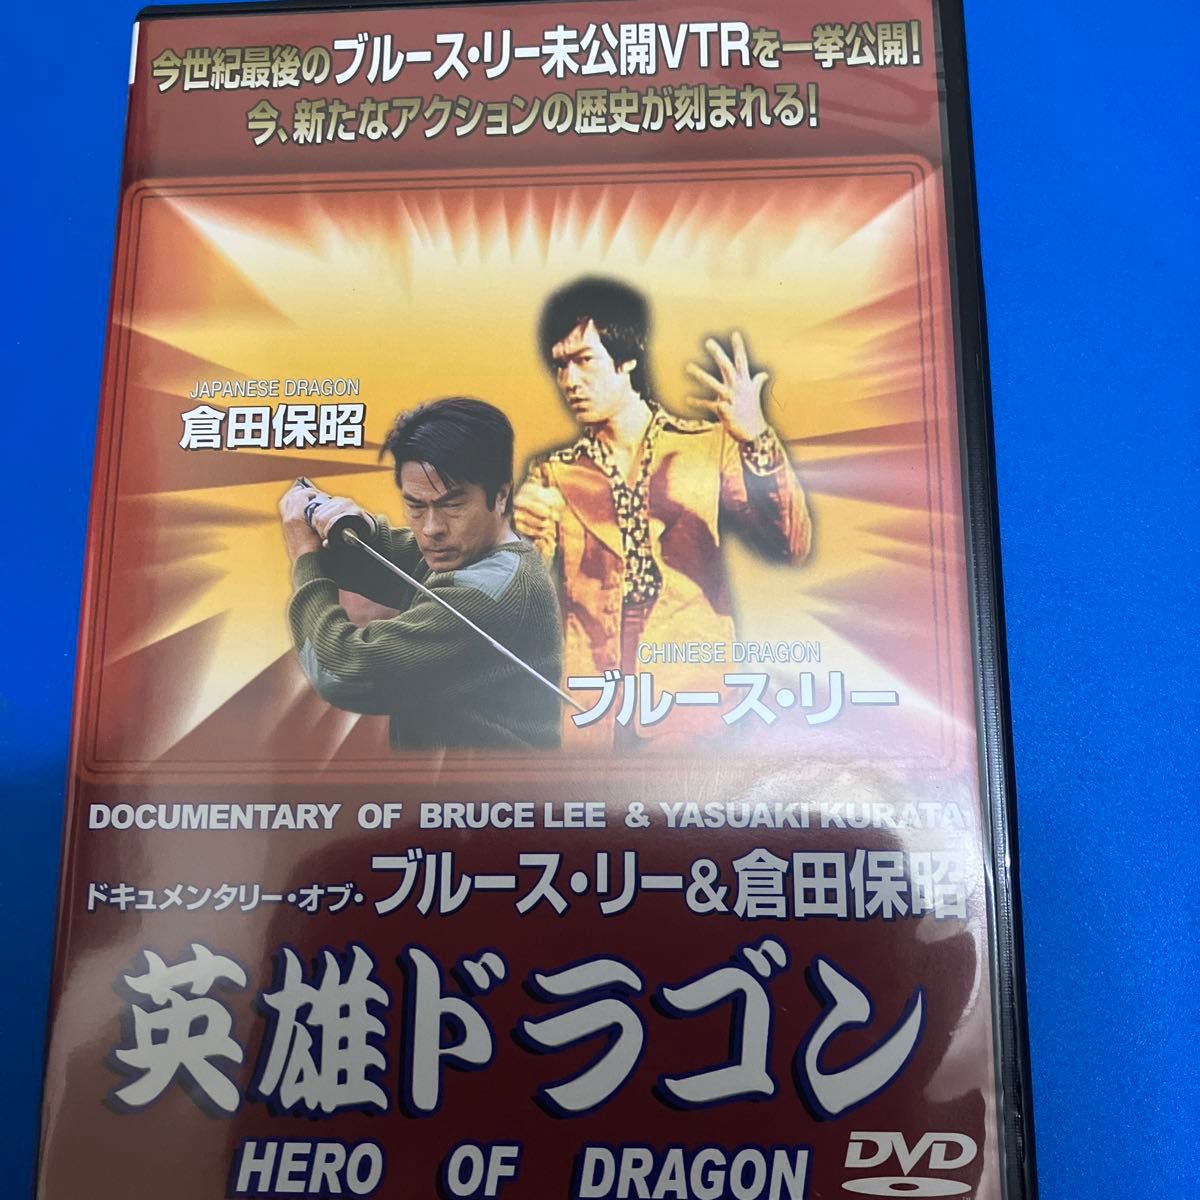 英雄ドラゴン~ドキュメンタリーオブブルースリー&倉田保昭~ DVD